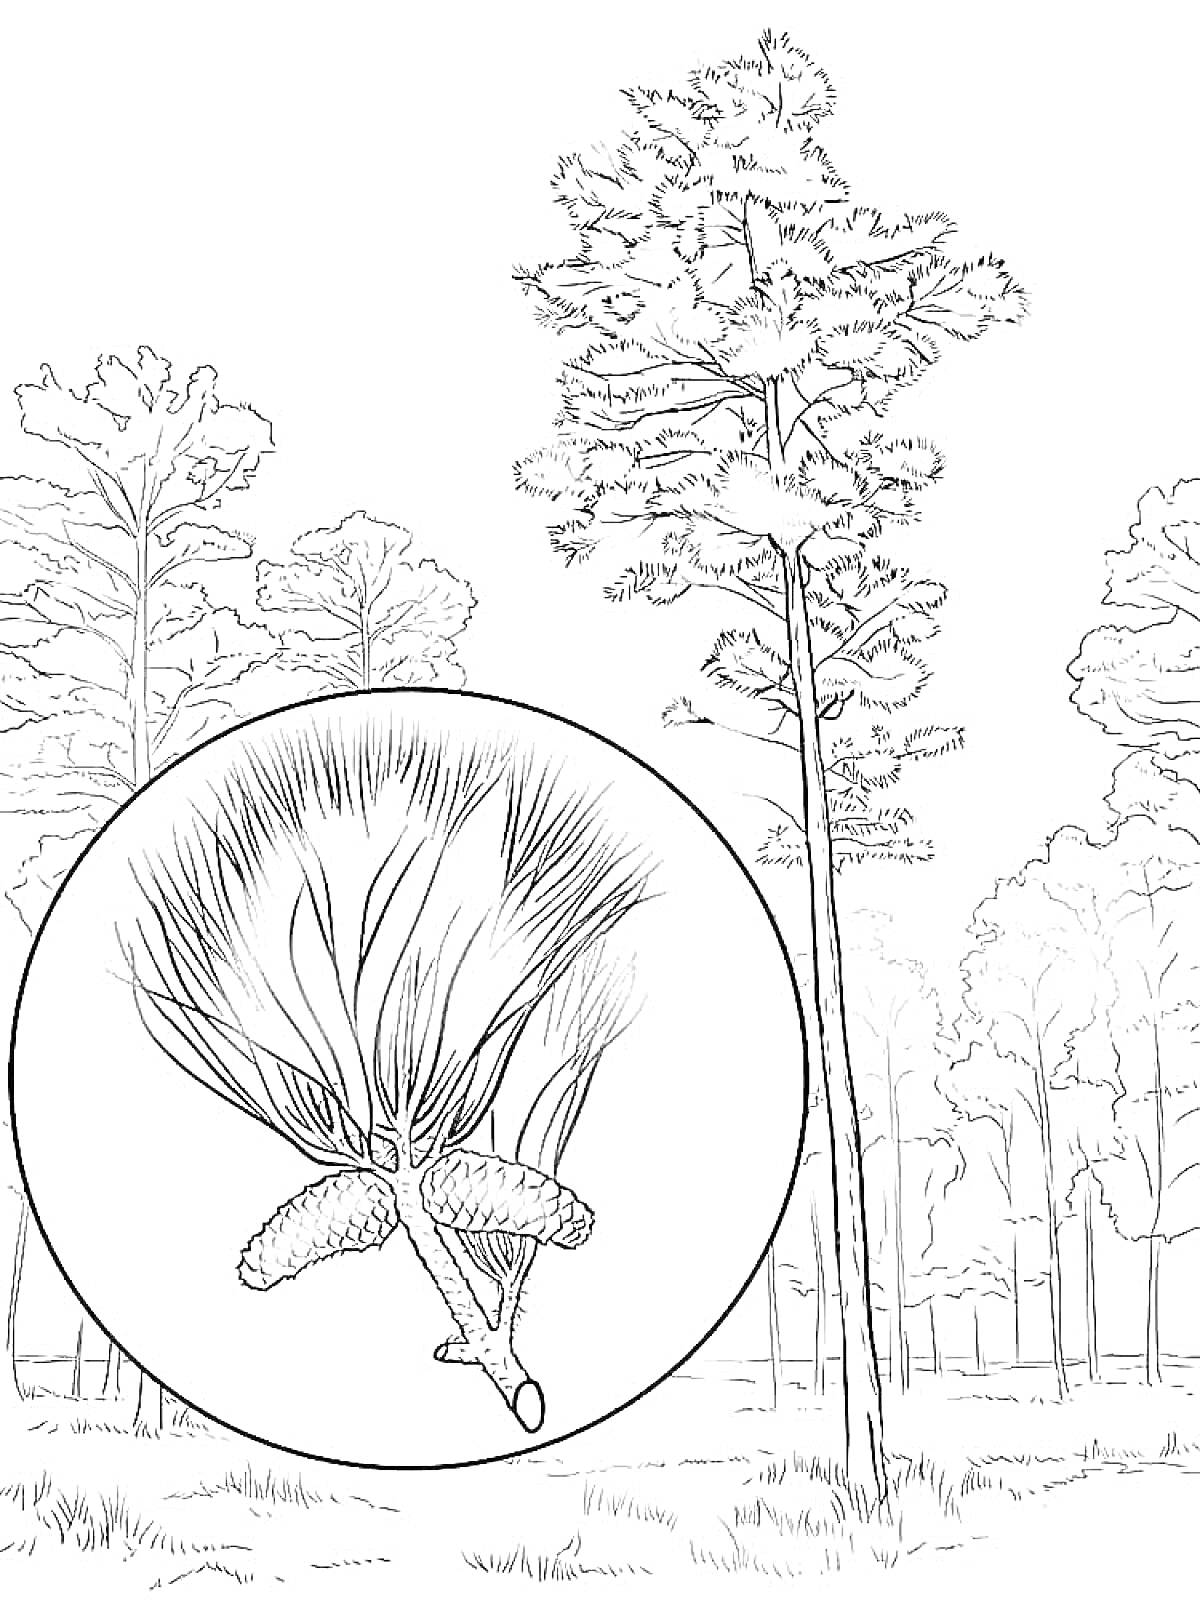 Сосновый лес с увеличенным изображением хвои и шишек сосны